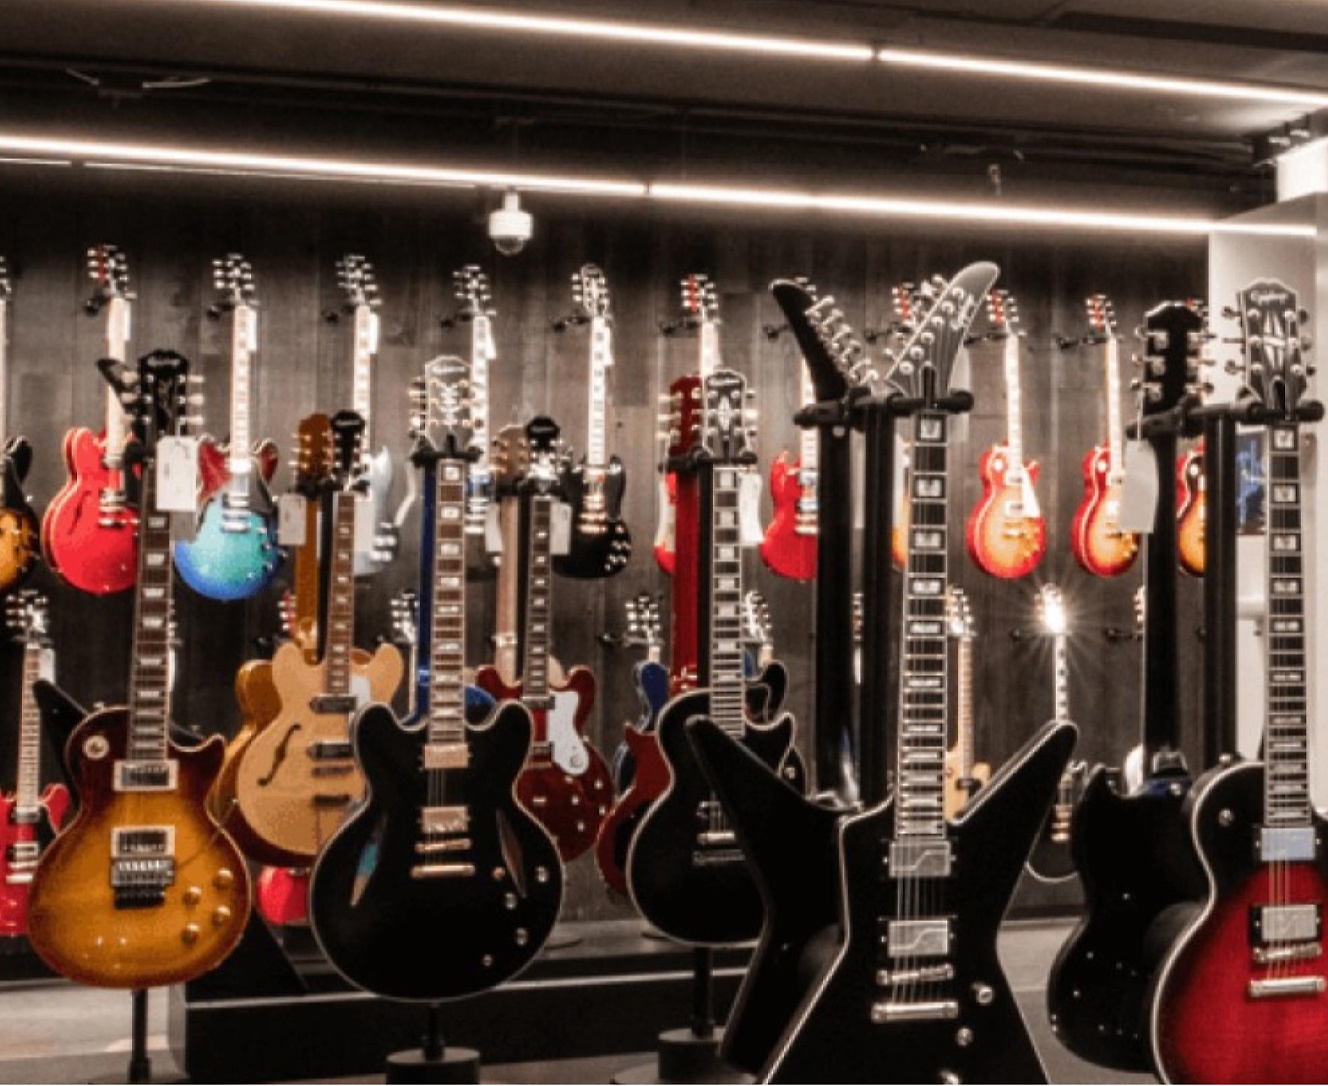 Muitas guitarras em exposição numa loja.